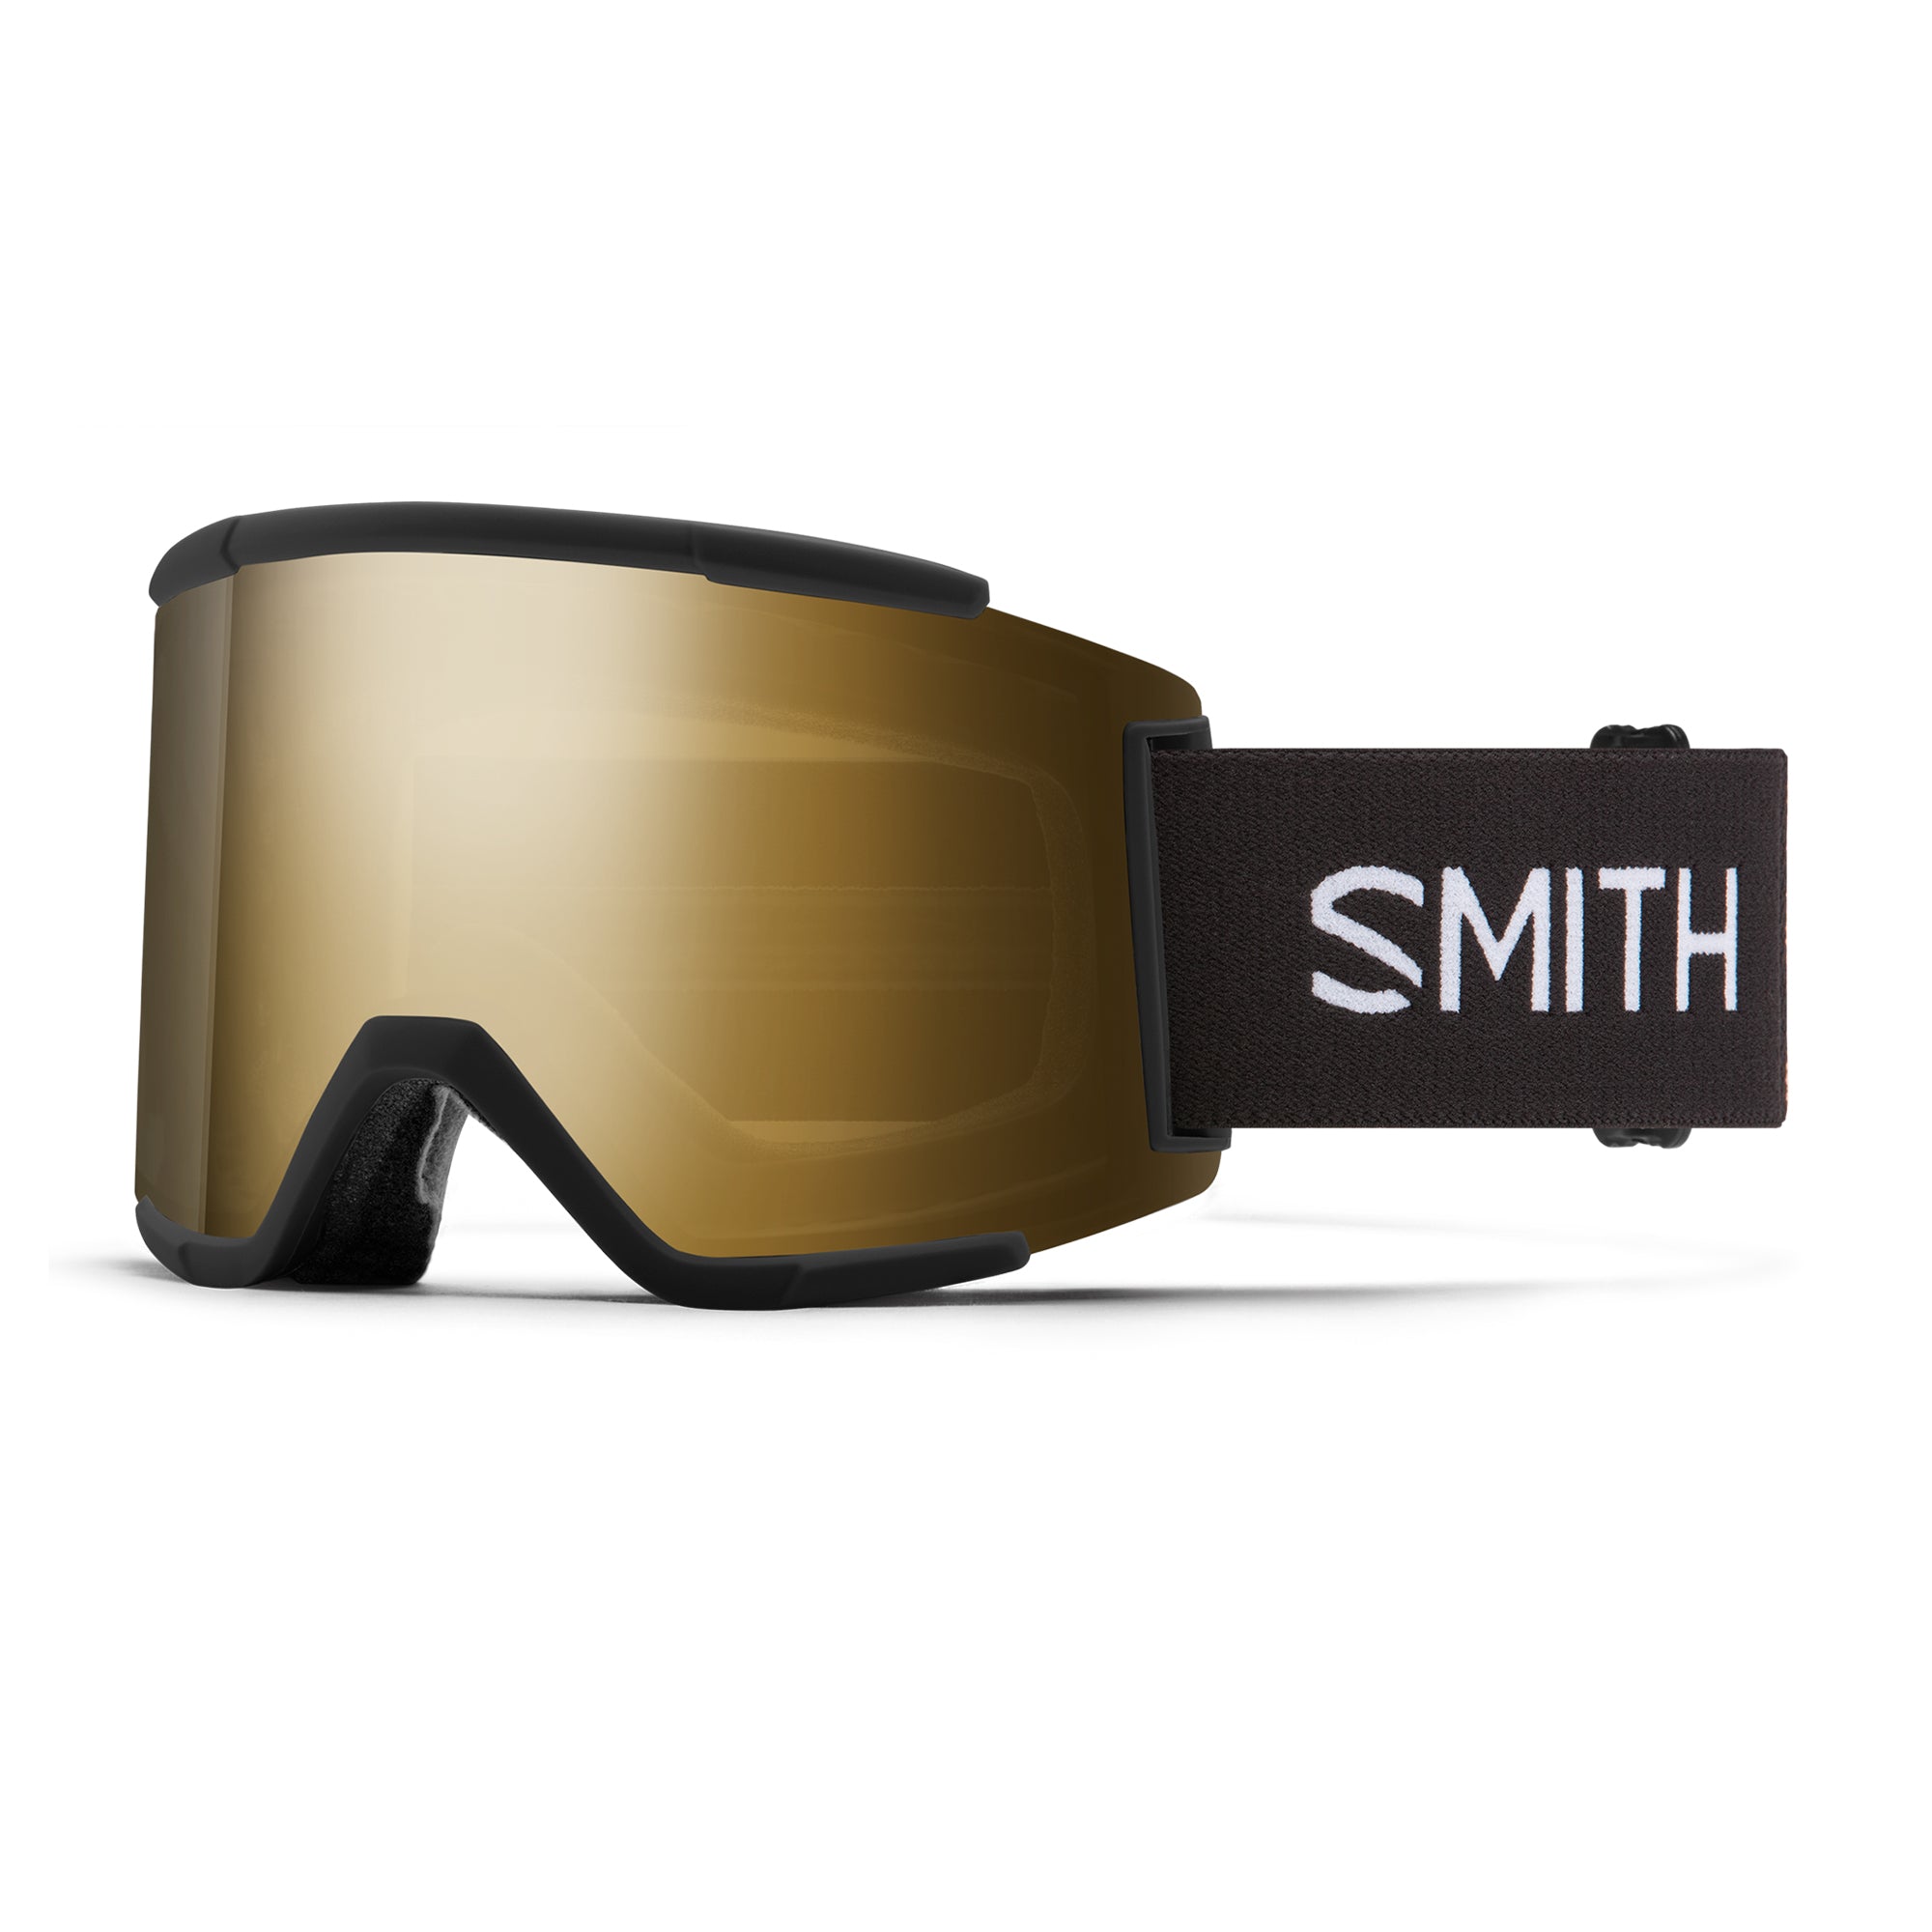 Smith SQUAD XL Snow Goggles - Fresh Skis